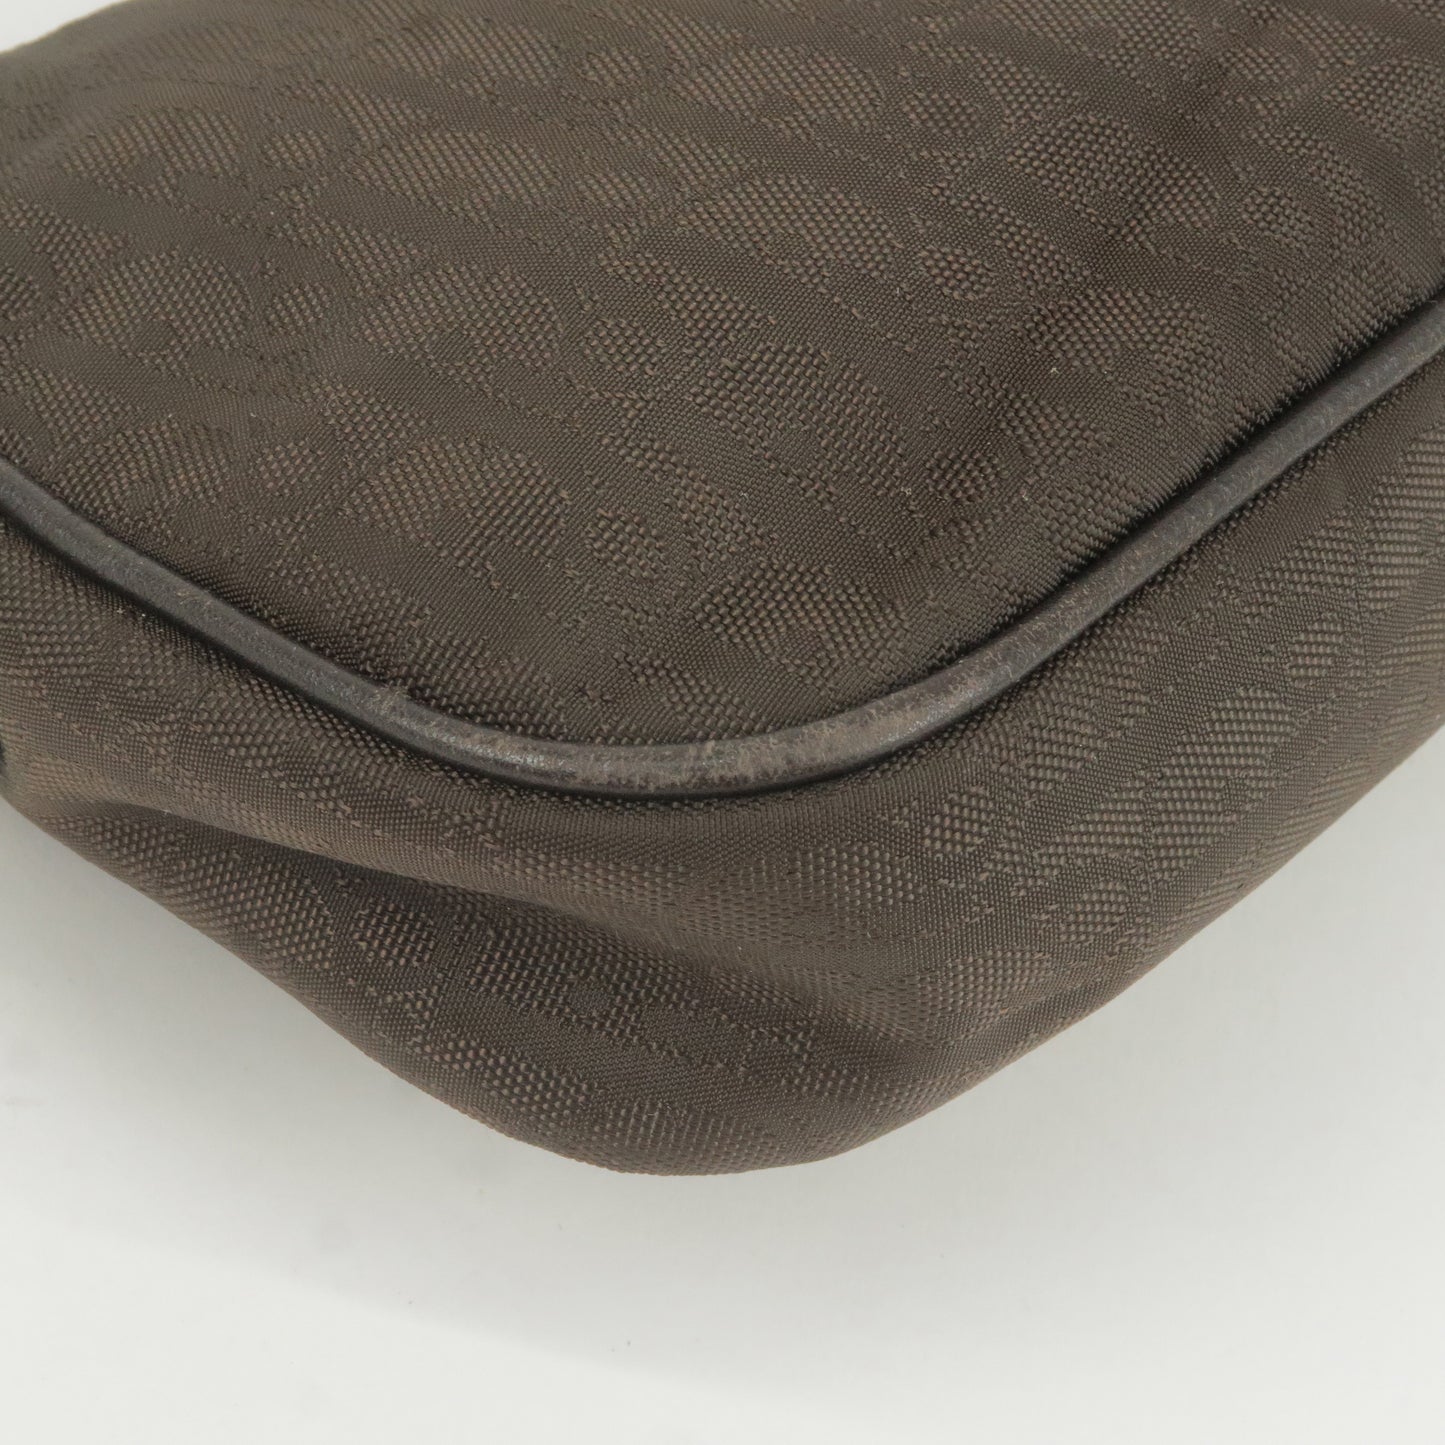 Christian Dior Trotter Canvas Leather Shoulder Bag Brown